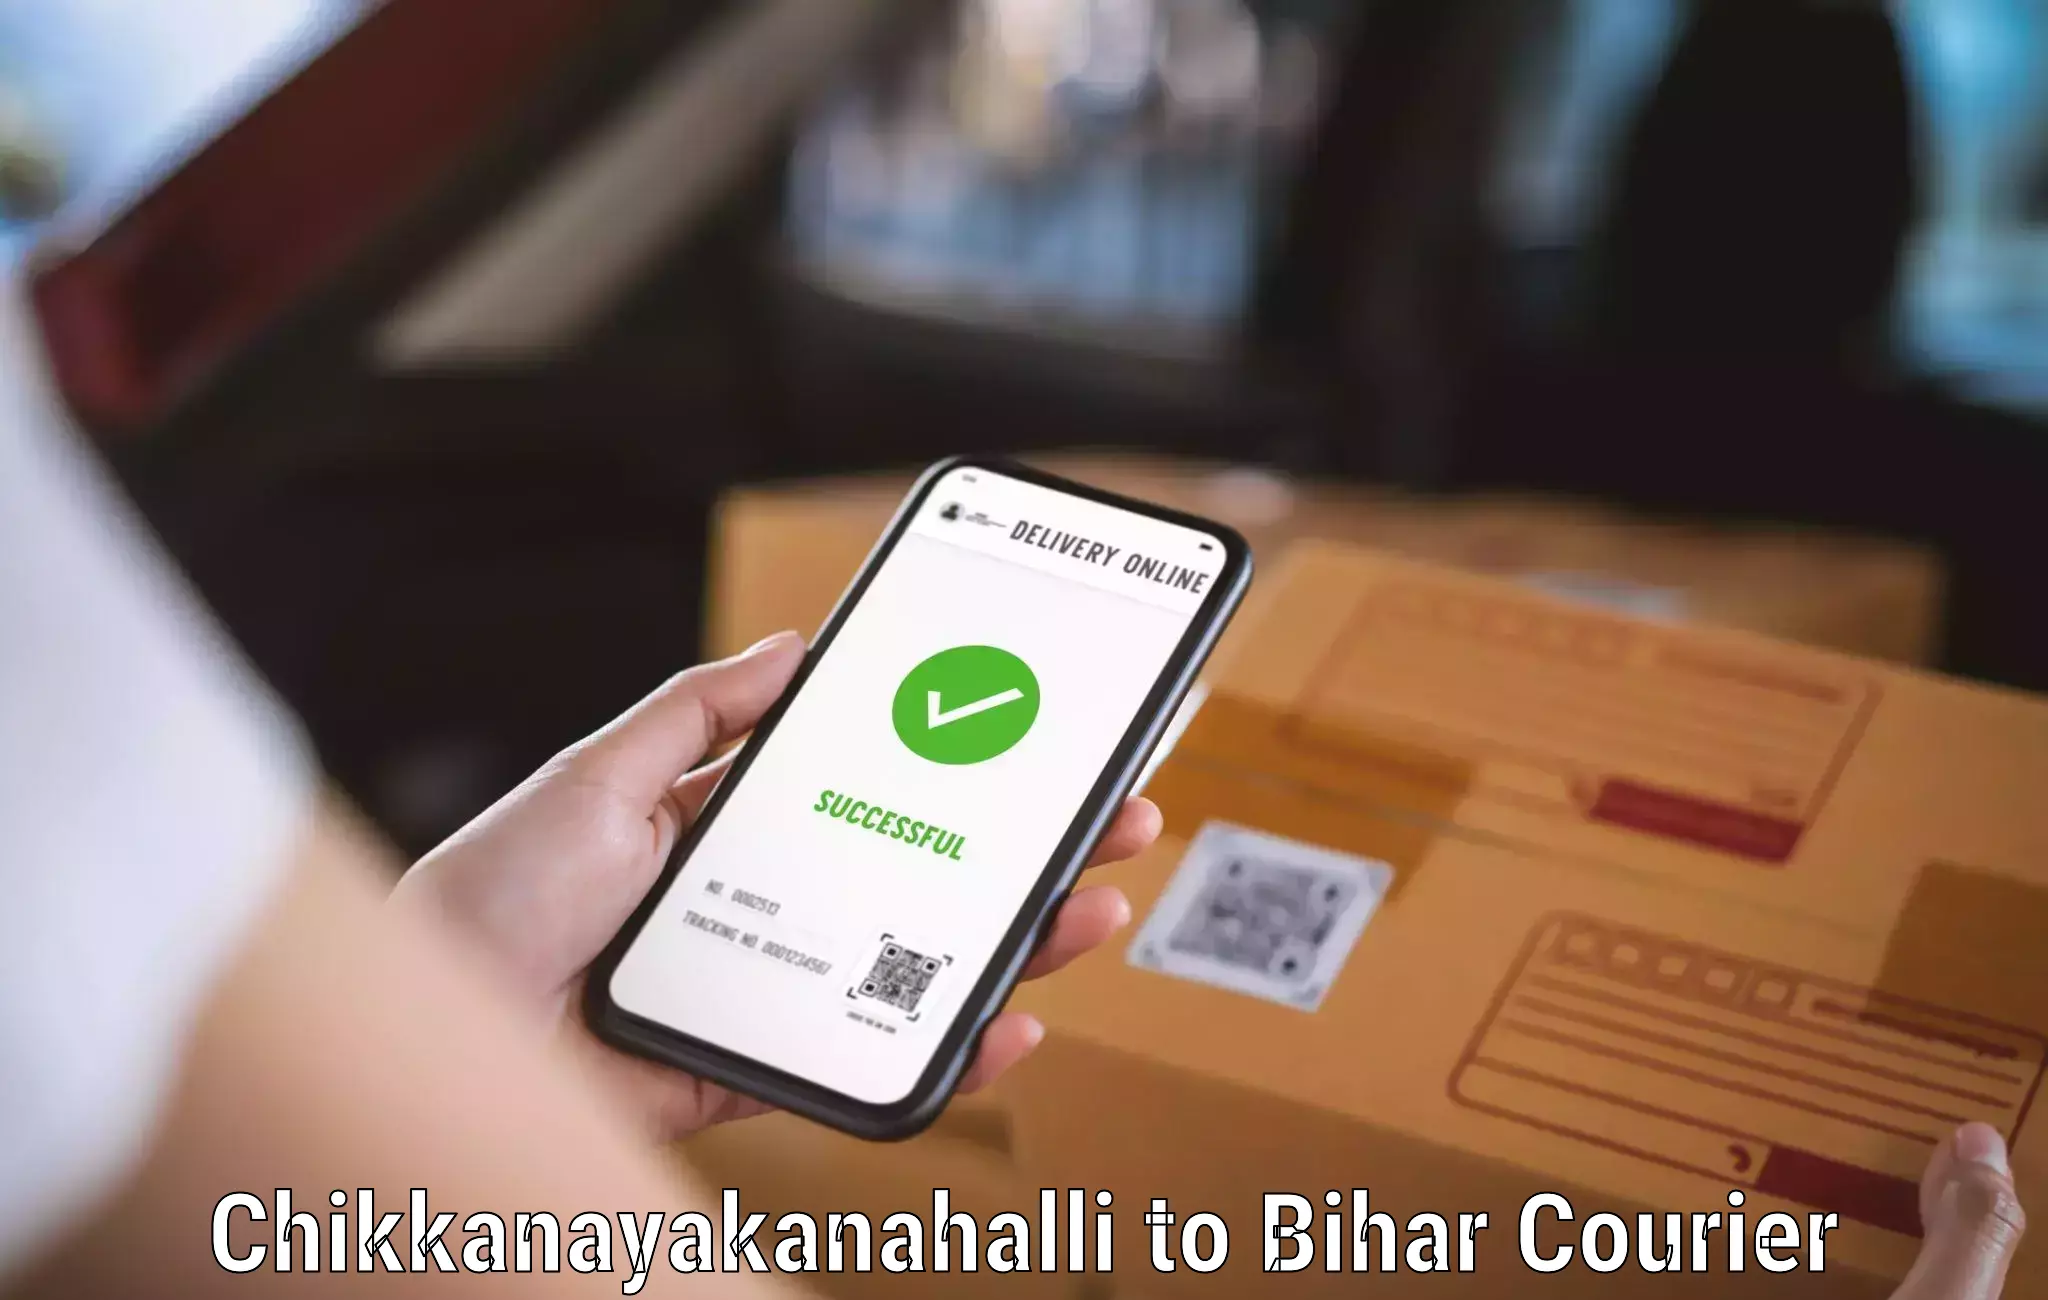 High-speed parcel service Chikkanayakanahalli to Bharwara